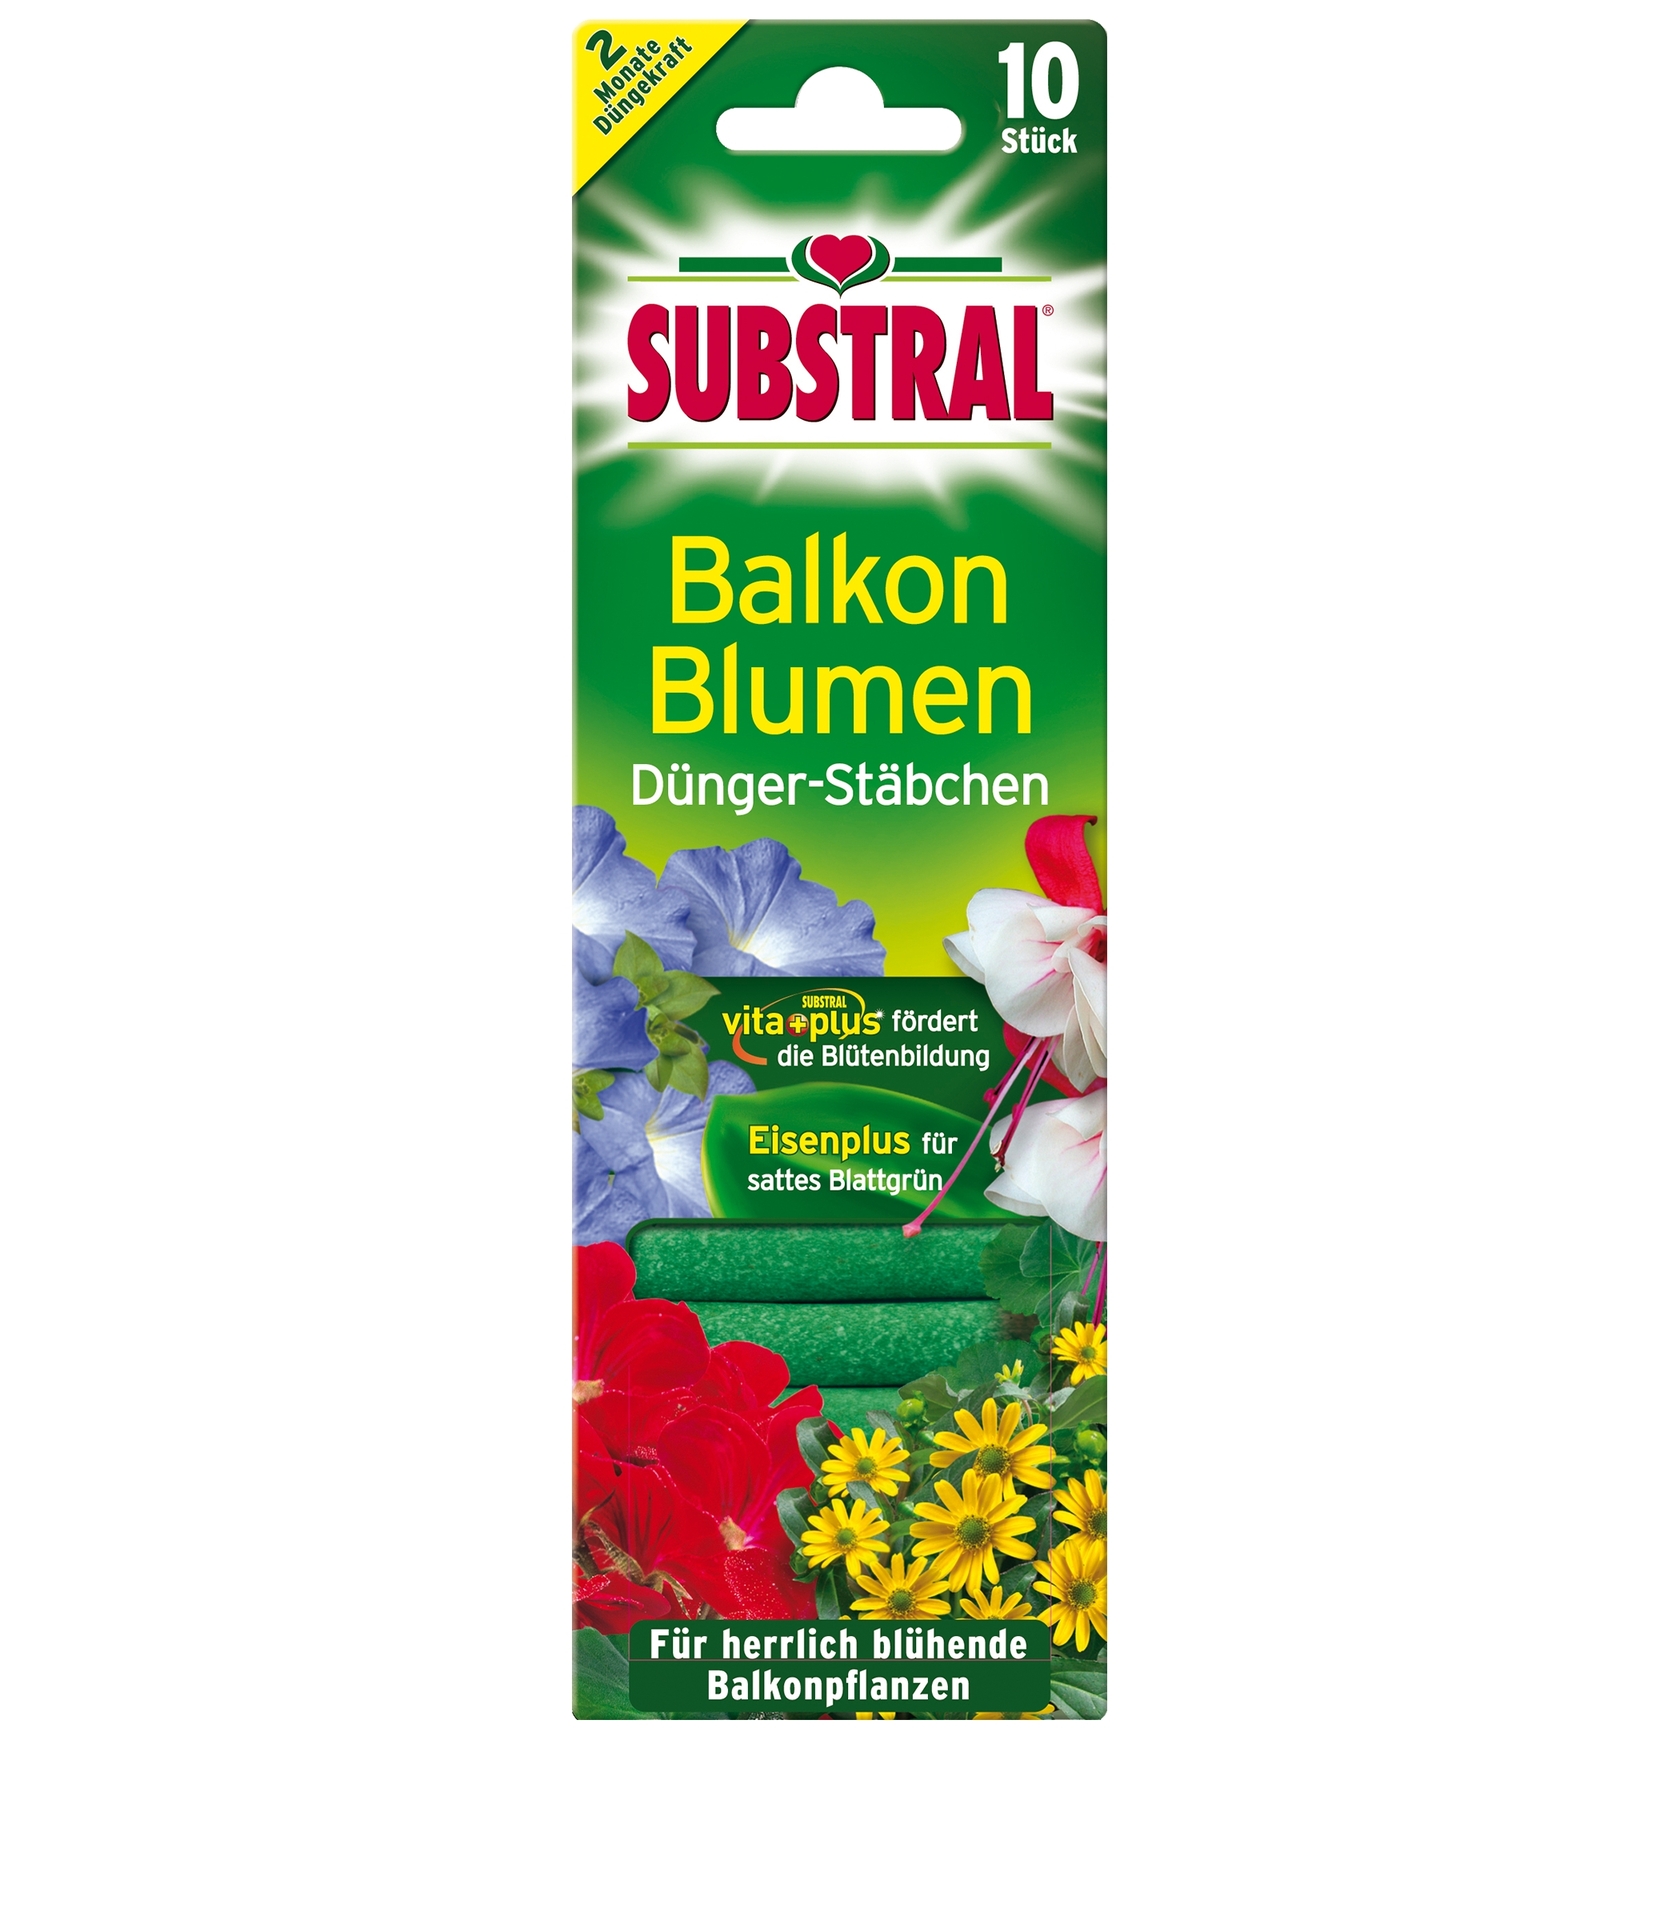 Evergreen Balkonblumen Dünger-Stäbchen